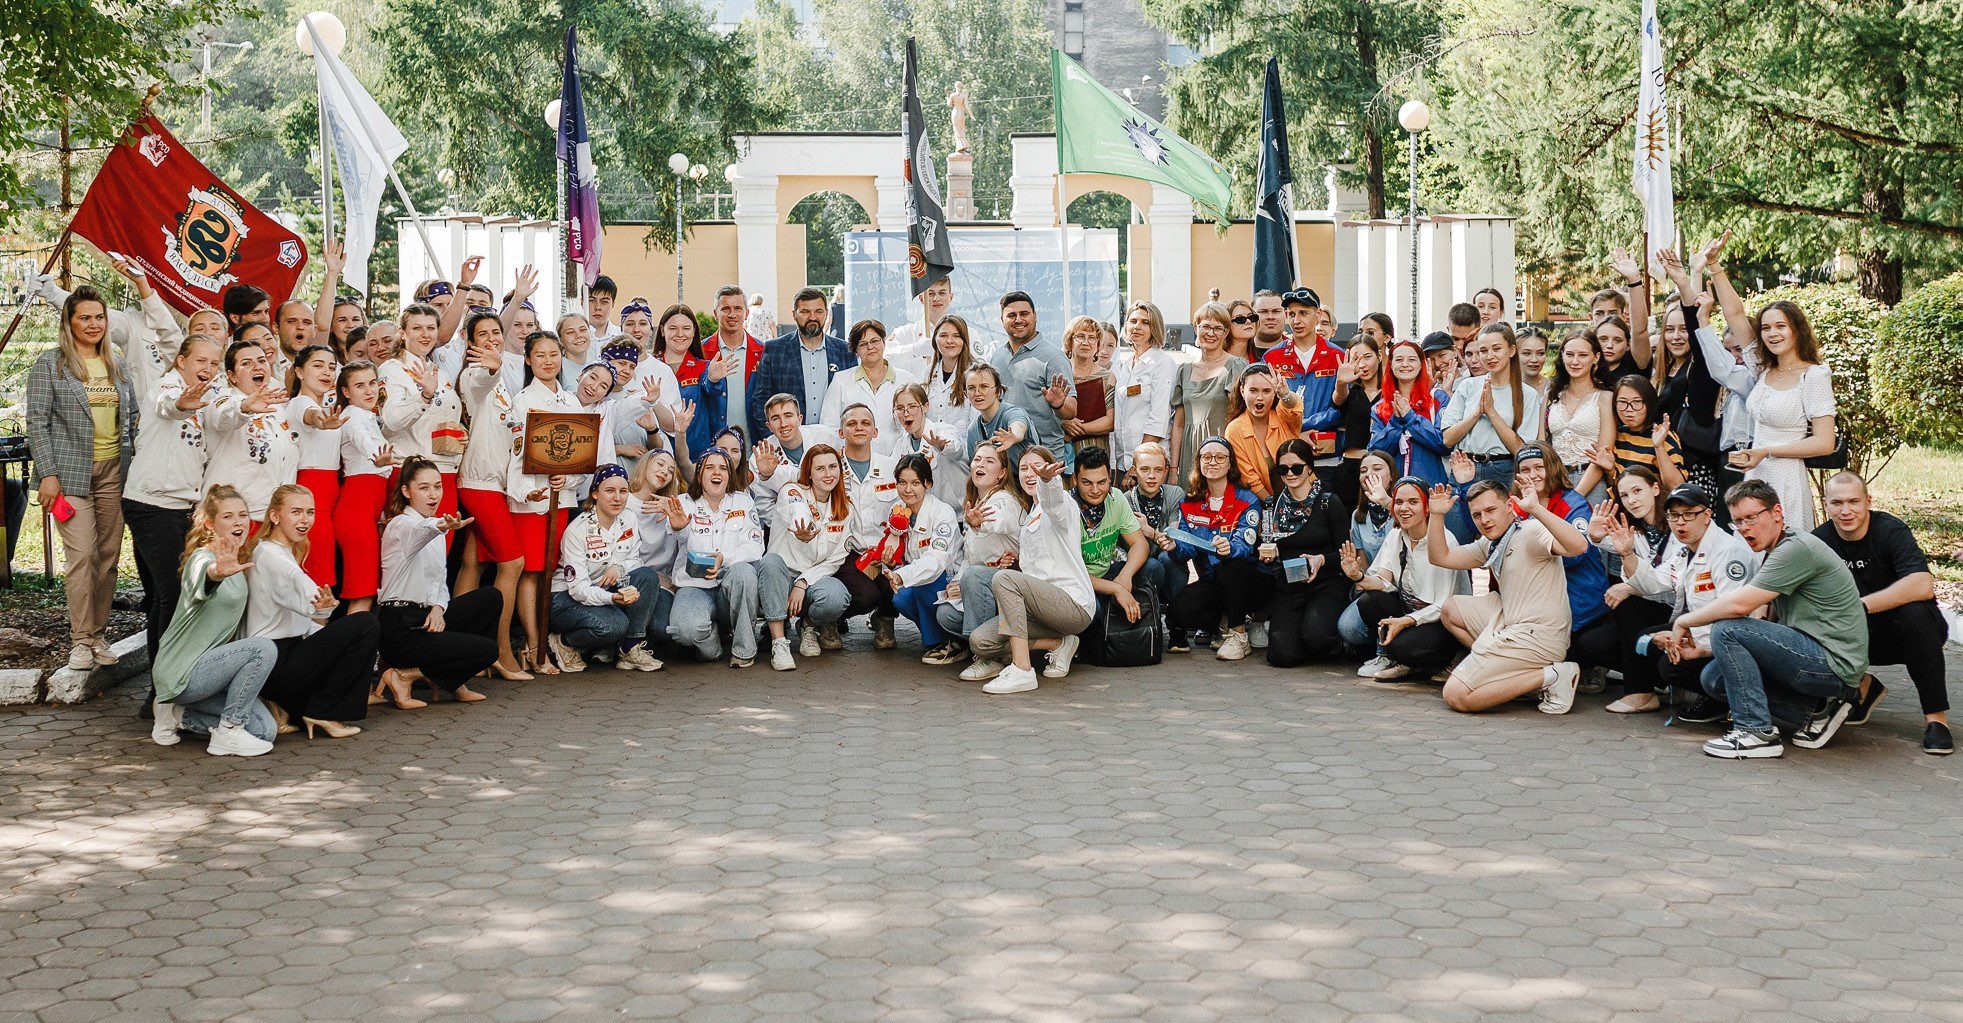 Региональный студенческий медицинский отряд «Олимп»: бойцы студенческих отрядов Кузбасса вносят вклад в здравоохранение региона